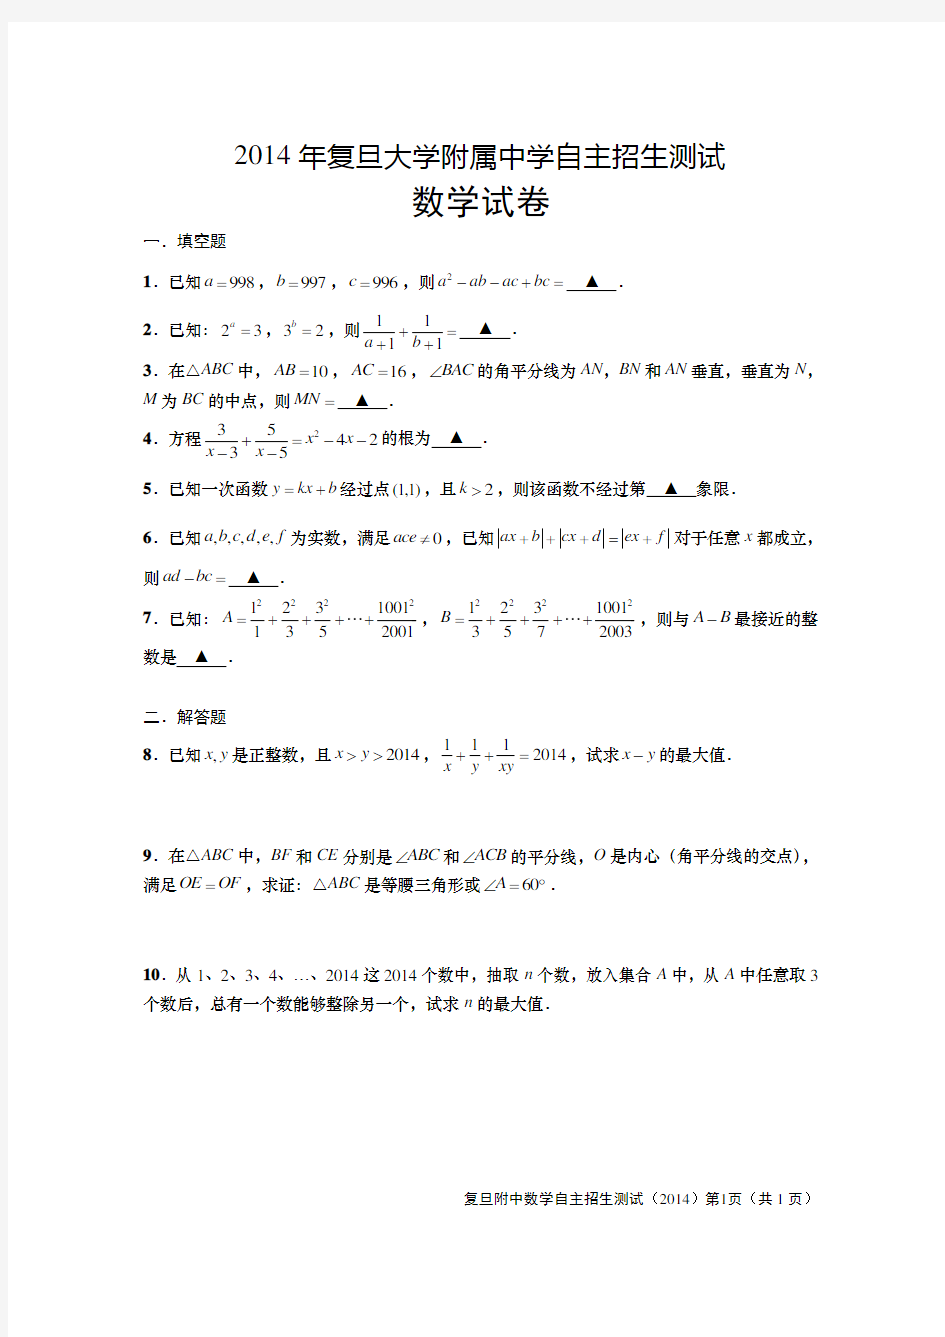 2014复旦附中自招数学测试题 上海自主招生